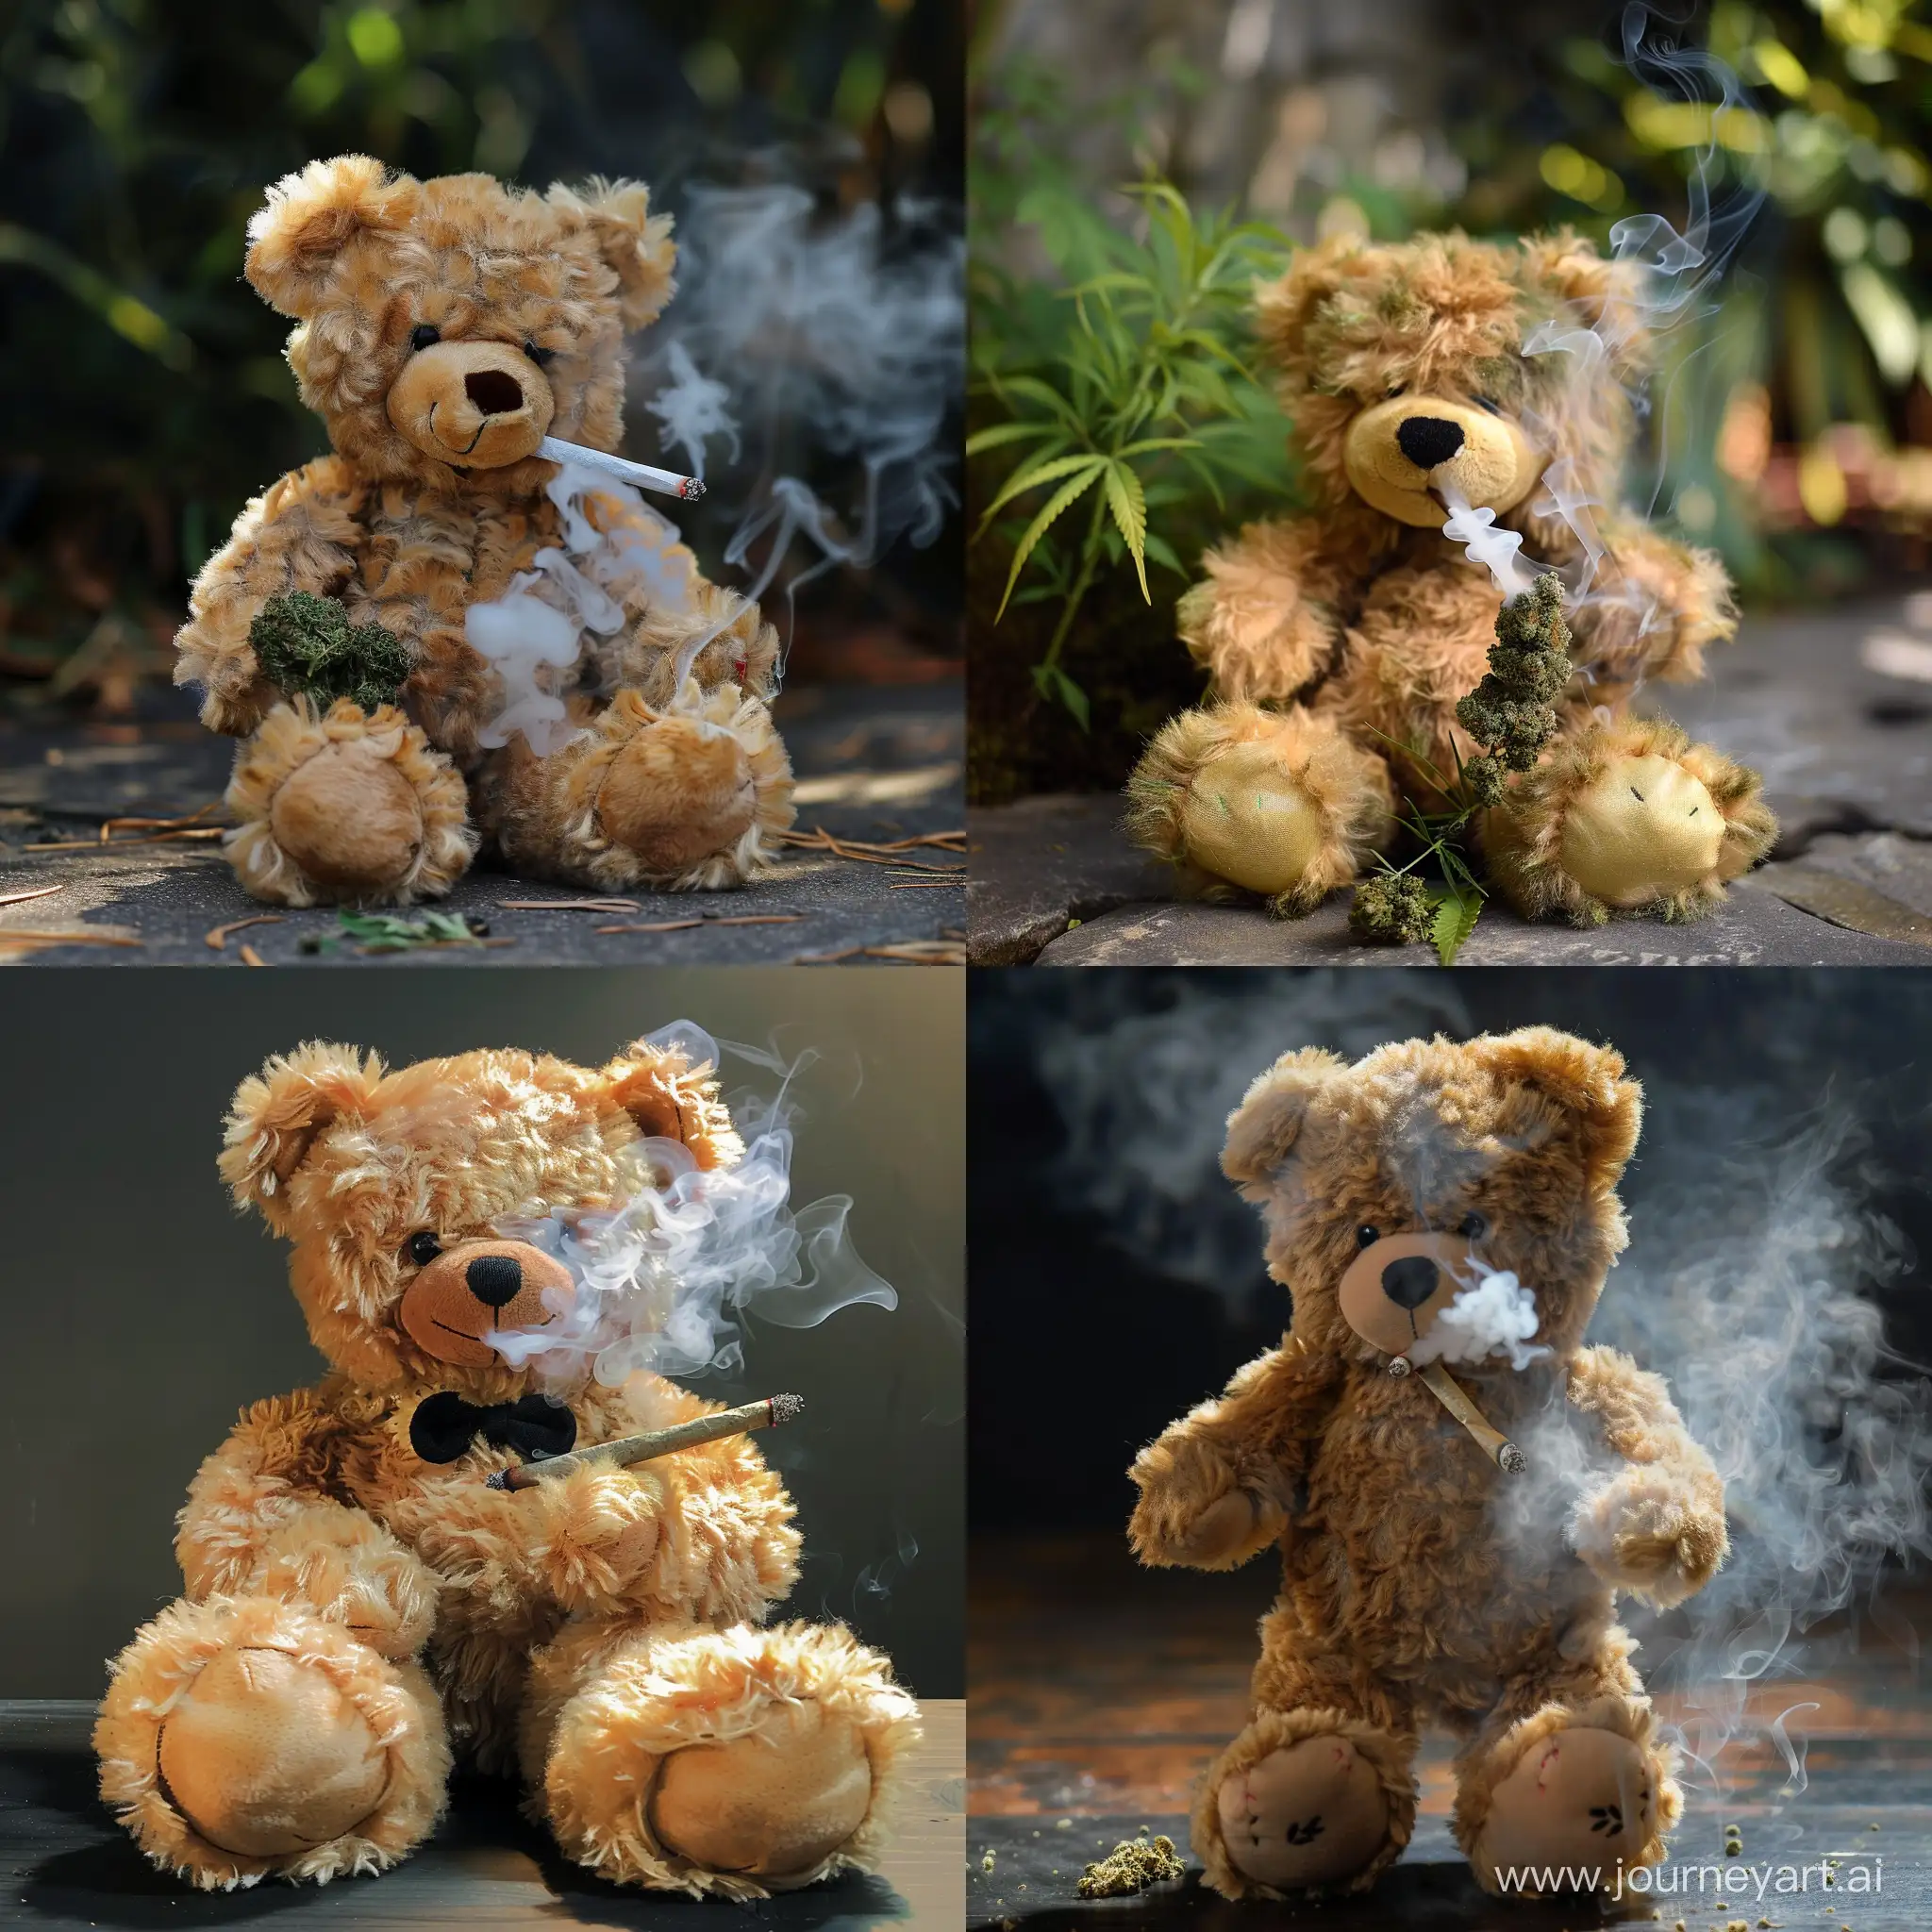 Erstelle ein Bild von einem Teddybär welcher Cannabis raucht